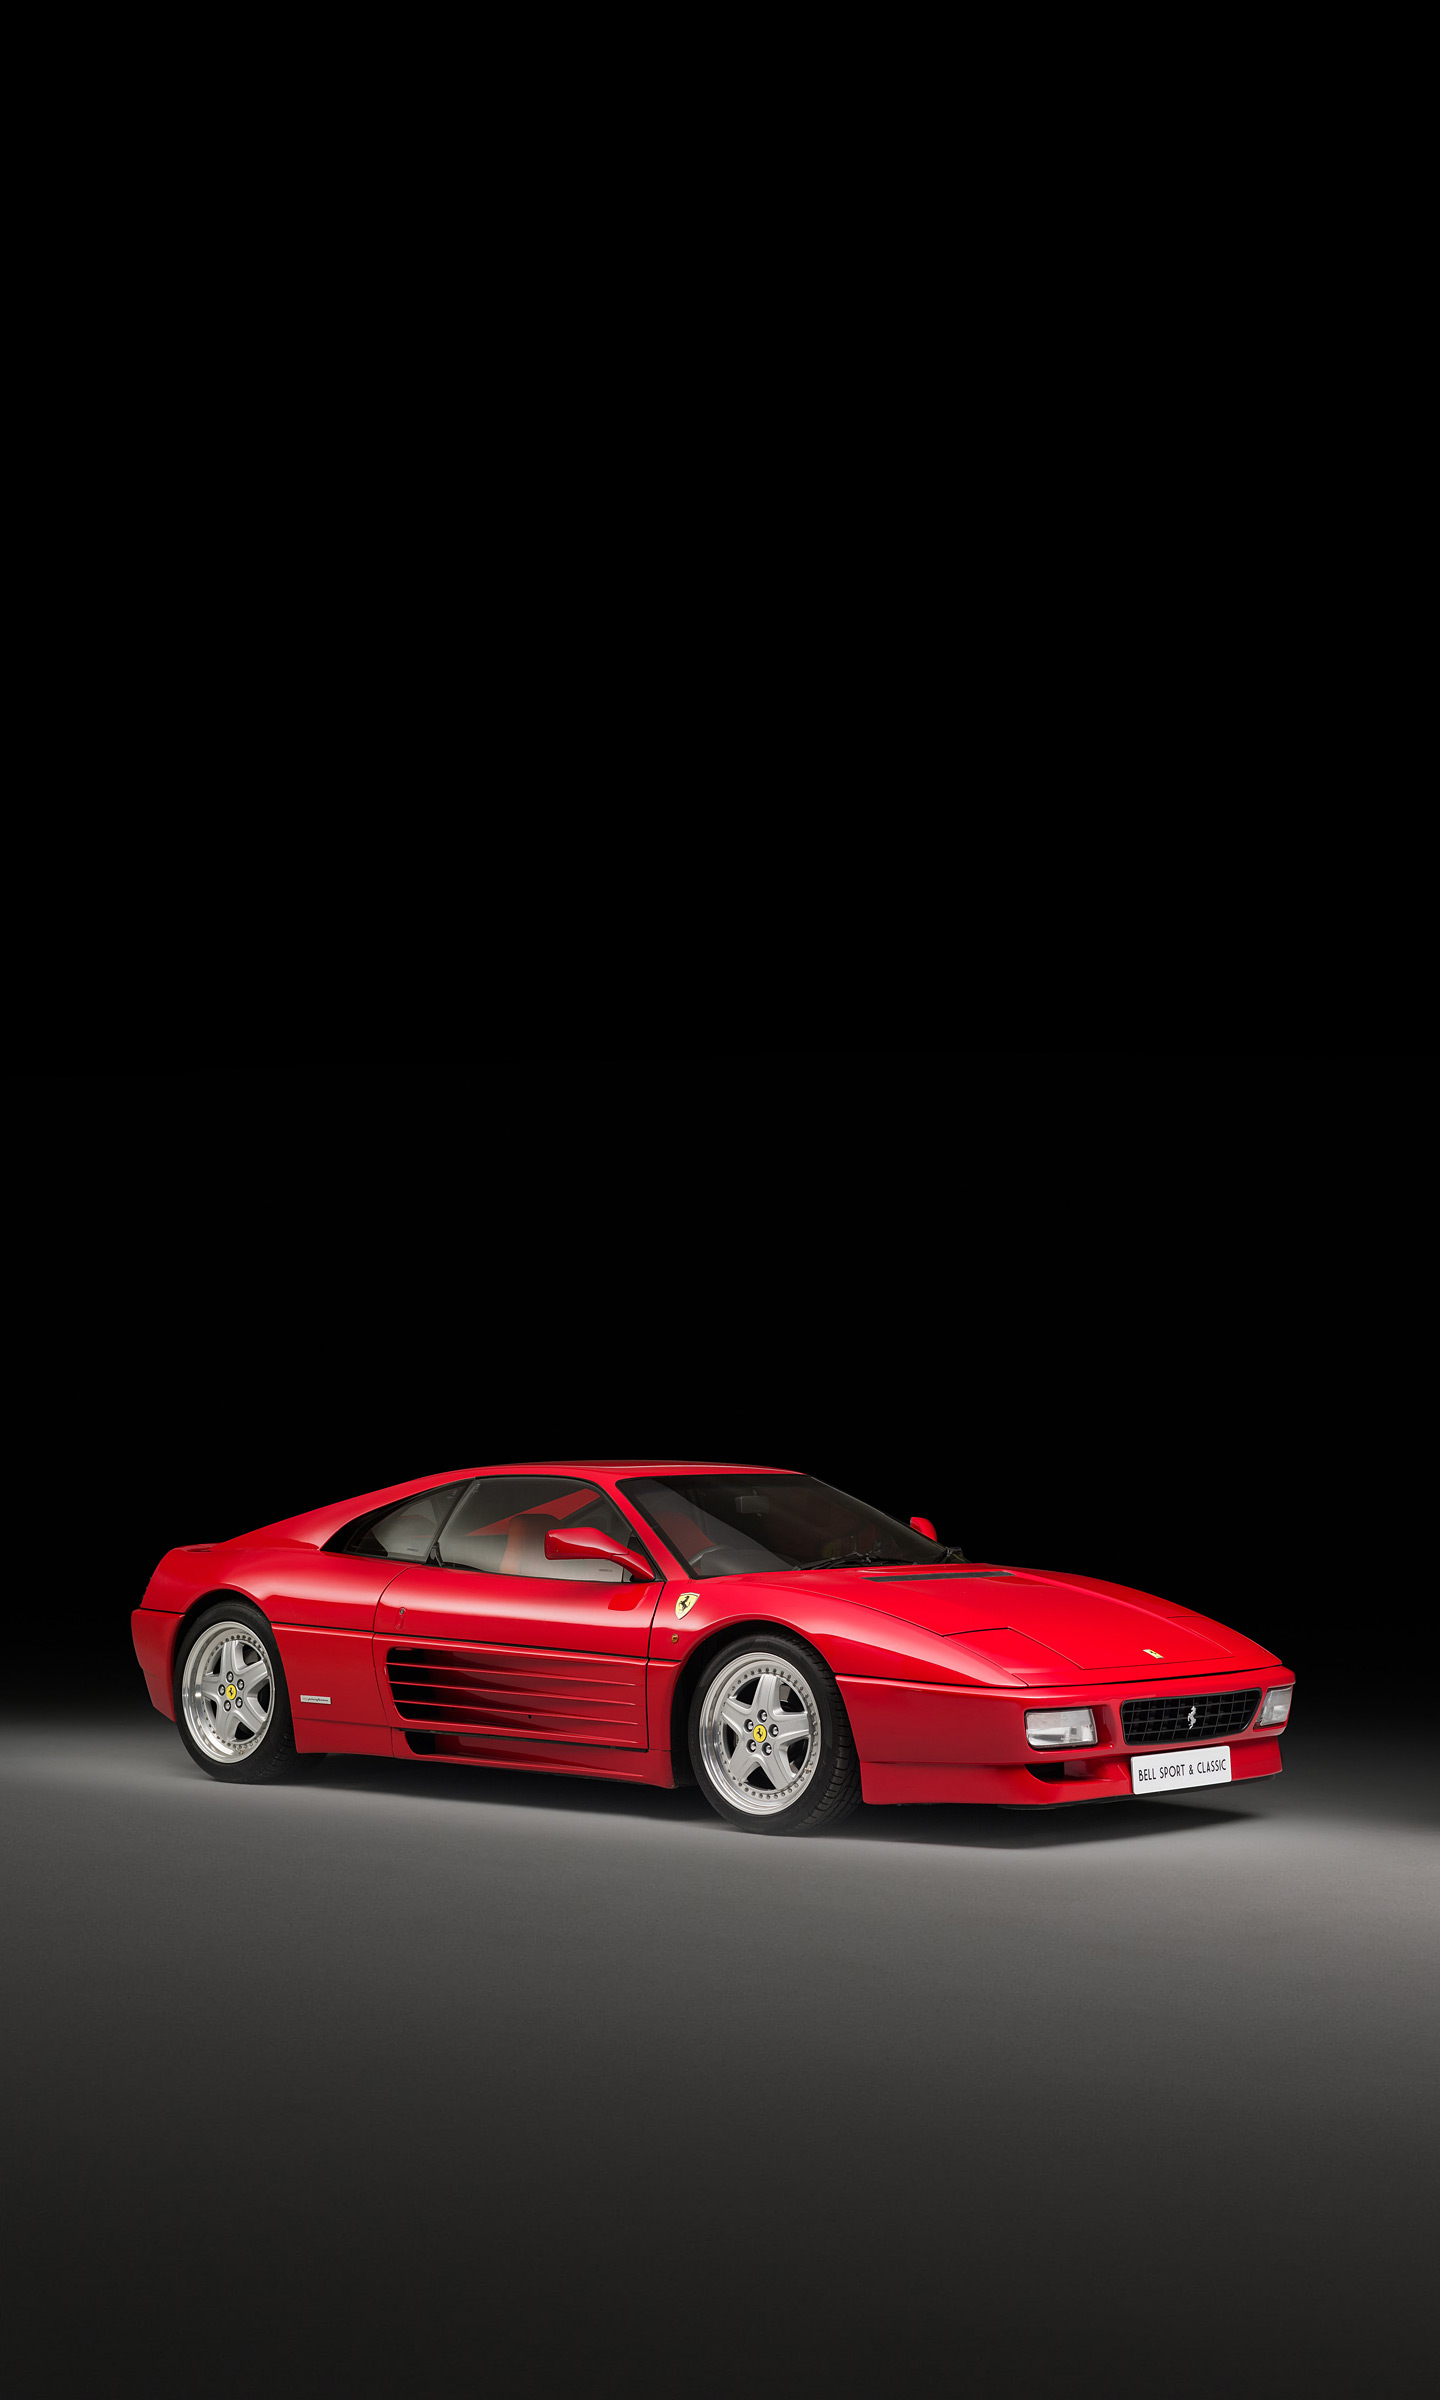  1994 Ferrari 348 GT Competizione Wallpaper.